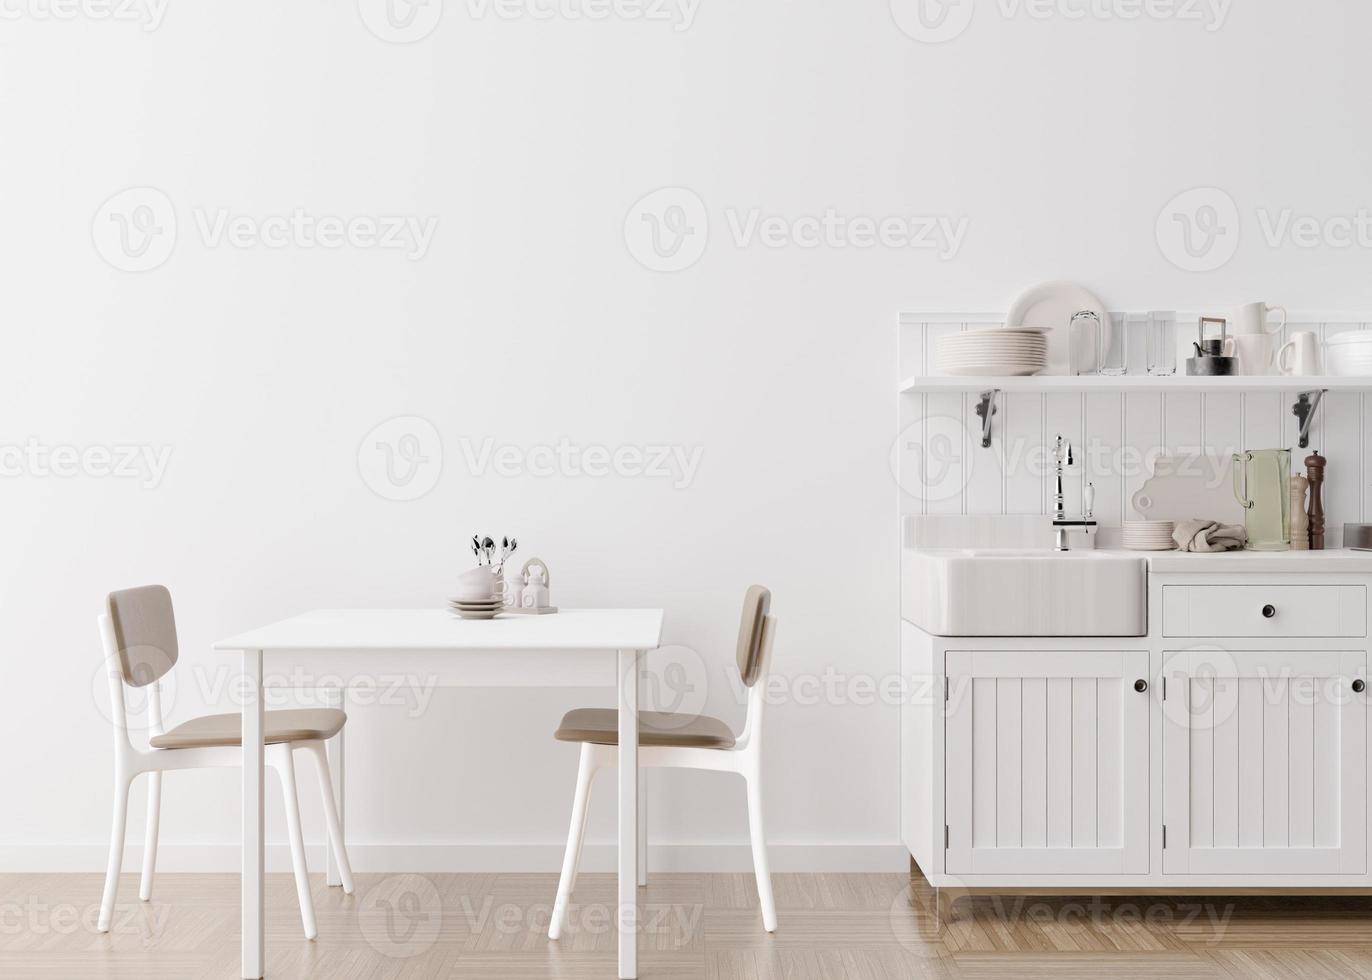 parede branca vazia na cozinha moderna. mock up interior em estilo minimalista e contemporâneo. espaço livre, copie o espaço para sua imagem, texto ou outro design. mesa, cadeiras. renderização 3D. foto